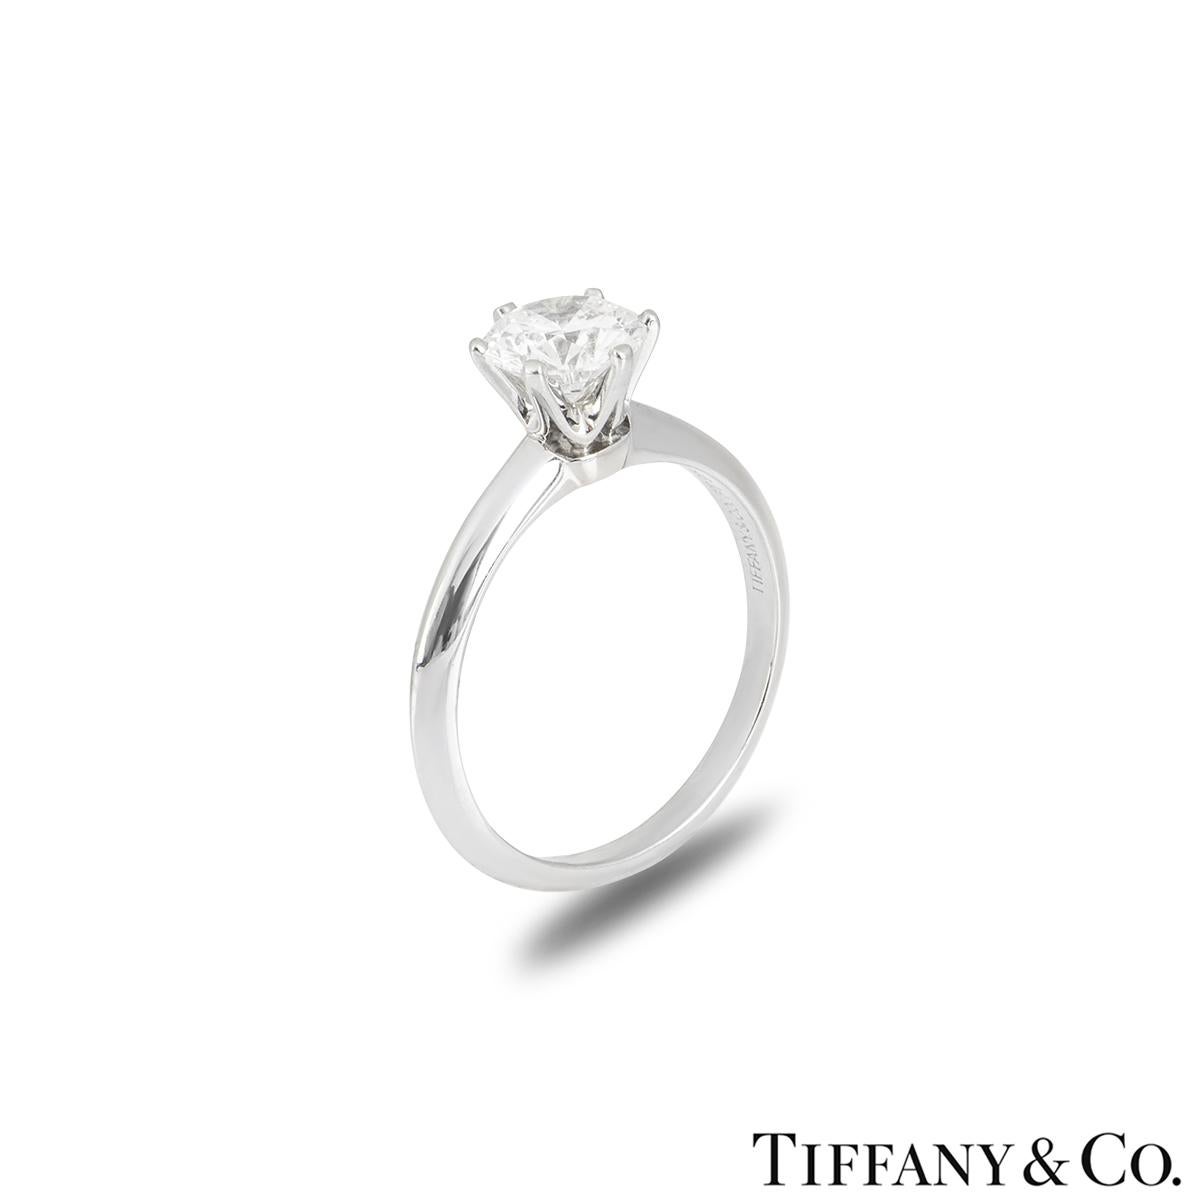 Superbe bague en diamant en platine de Tiffany & Co. de la collection Setting. La bague comprend un diamant rond de taille brillant serti à 6 griffes, pesant 1,07 ct, de couleur E et de pureté VVS2. La bague est une taille M/ US 6/ EU 52 mais peut